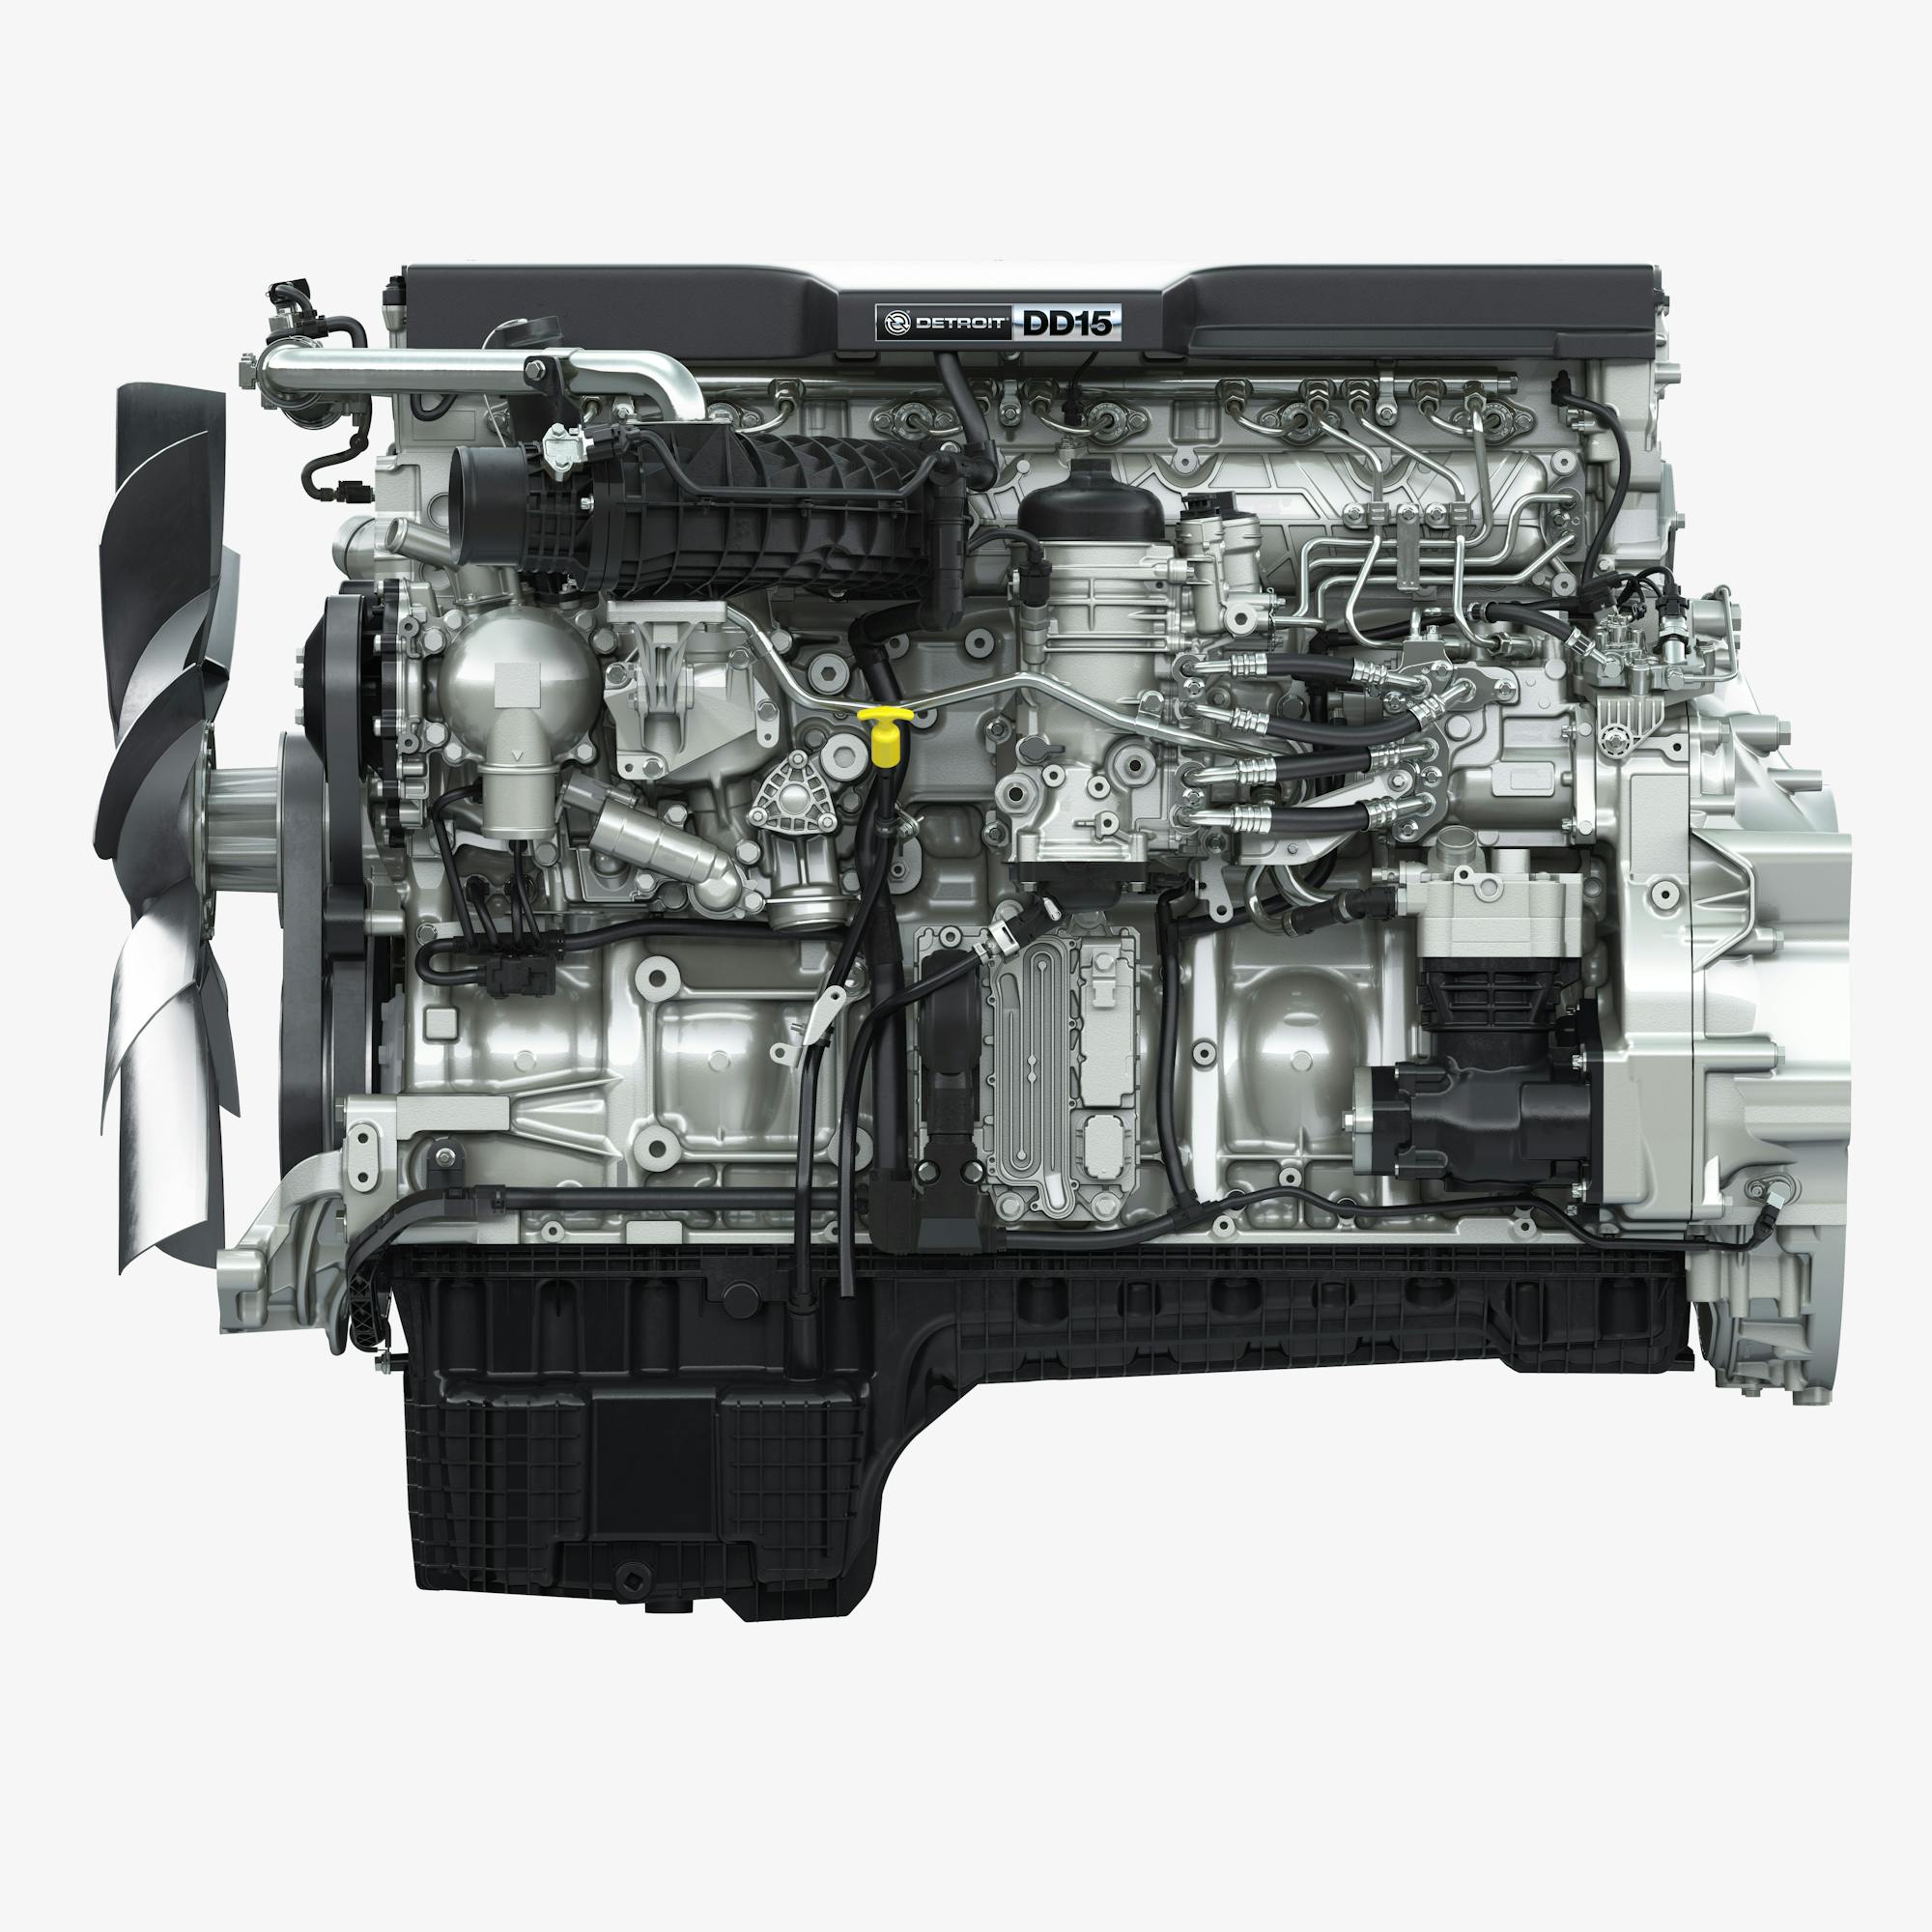 Дд 15. Detroit Diesel dd15. Detroit dd15 engine. Мотор 250/400 дизель арт. Detroit Diesel logo.